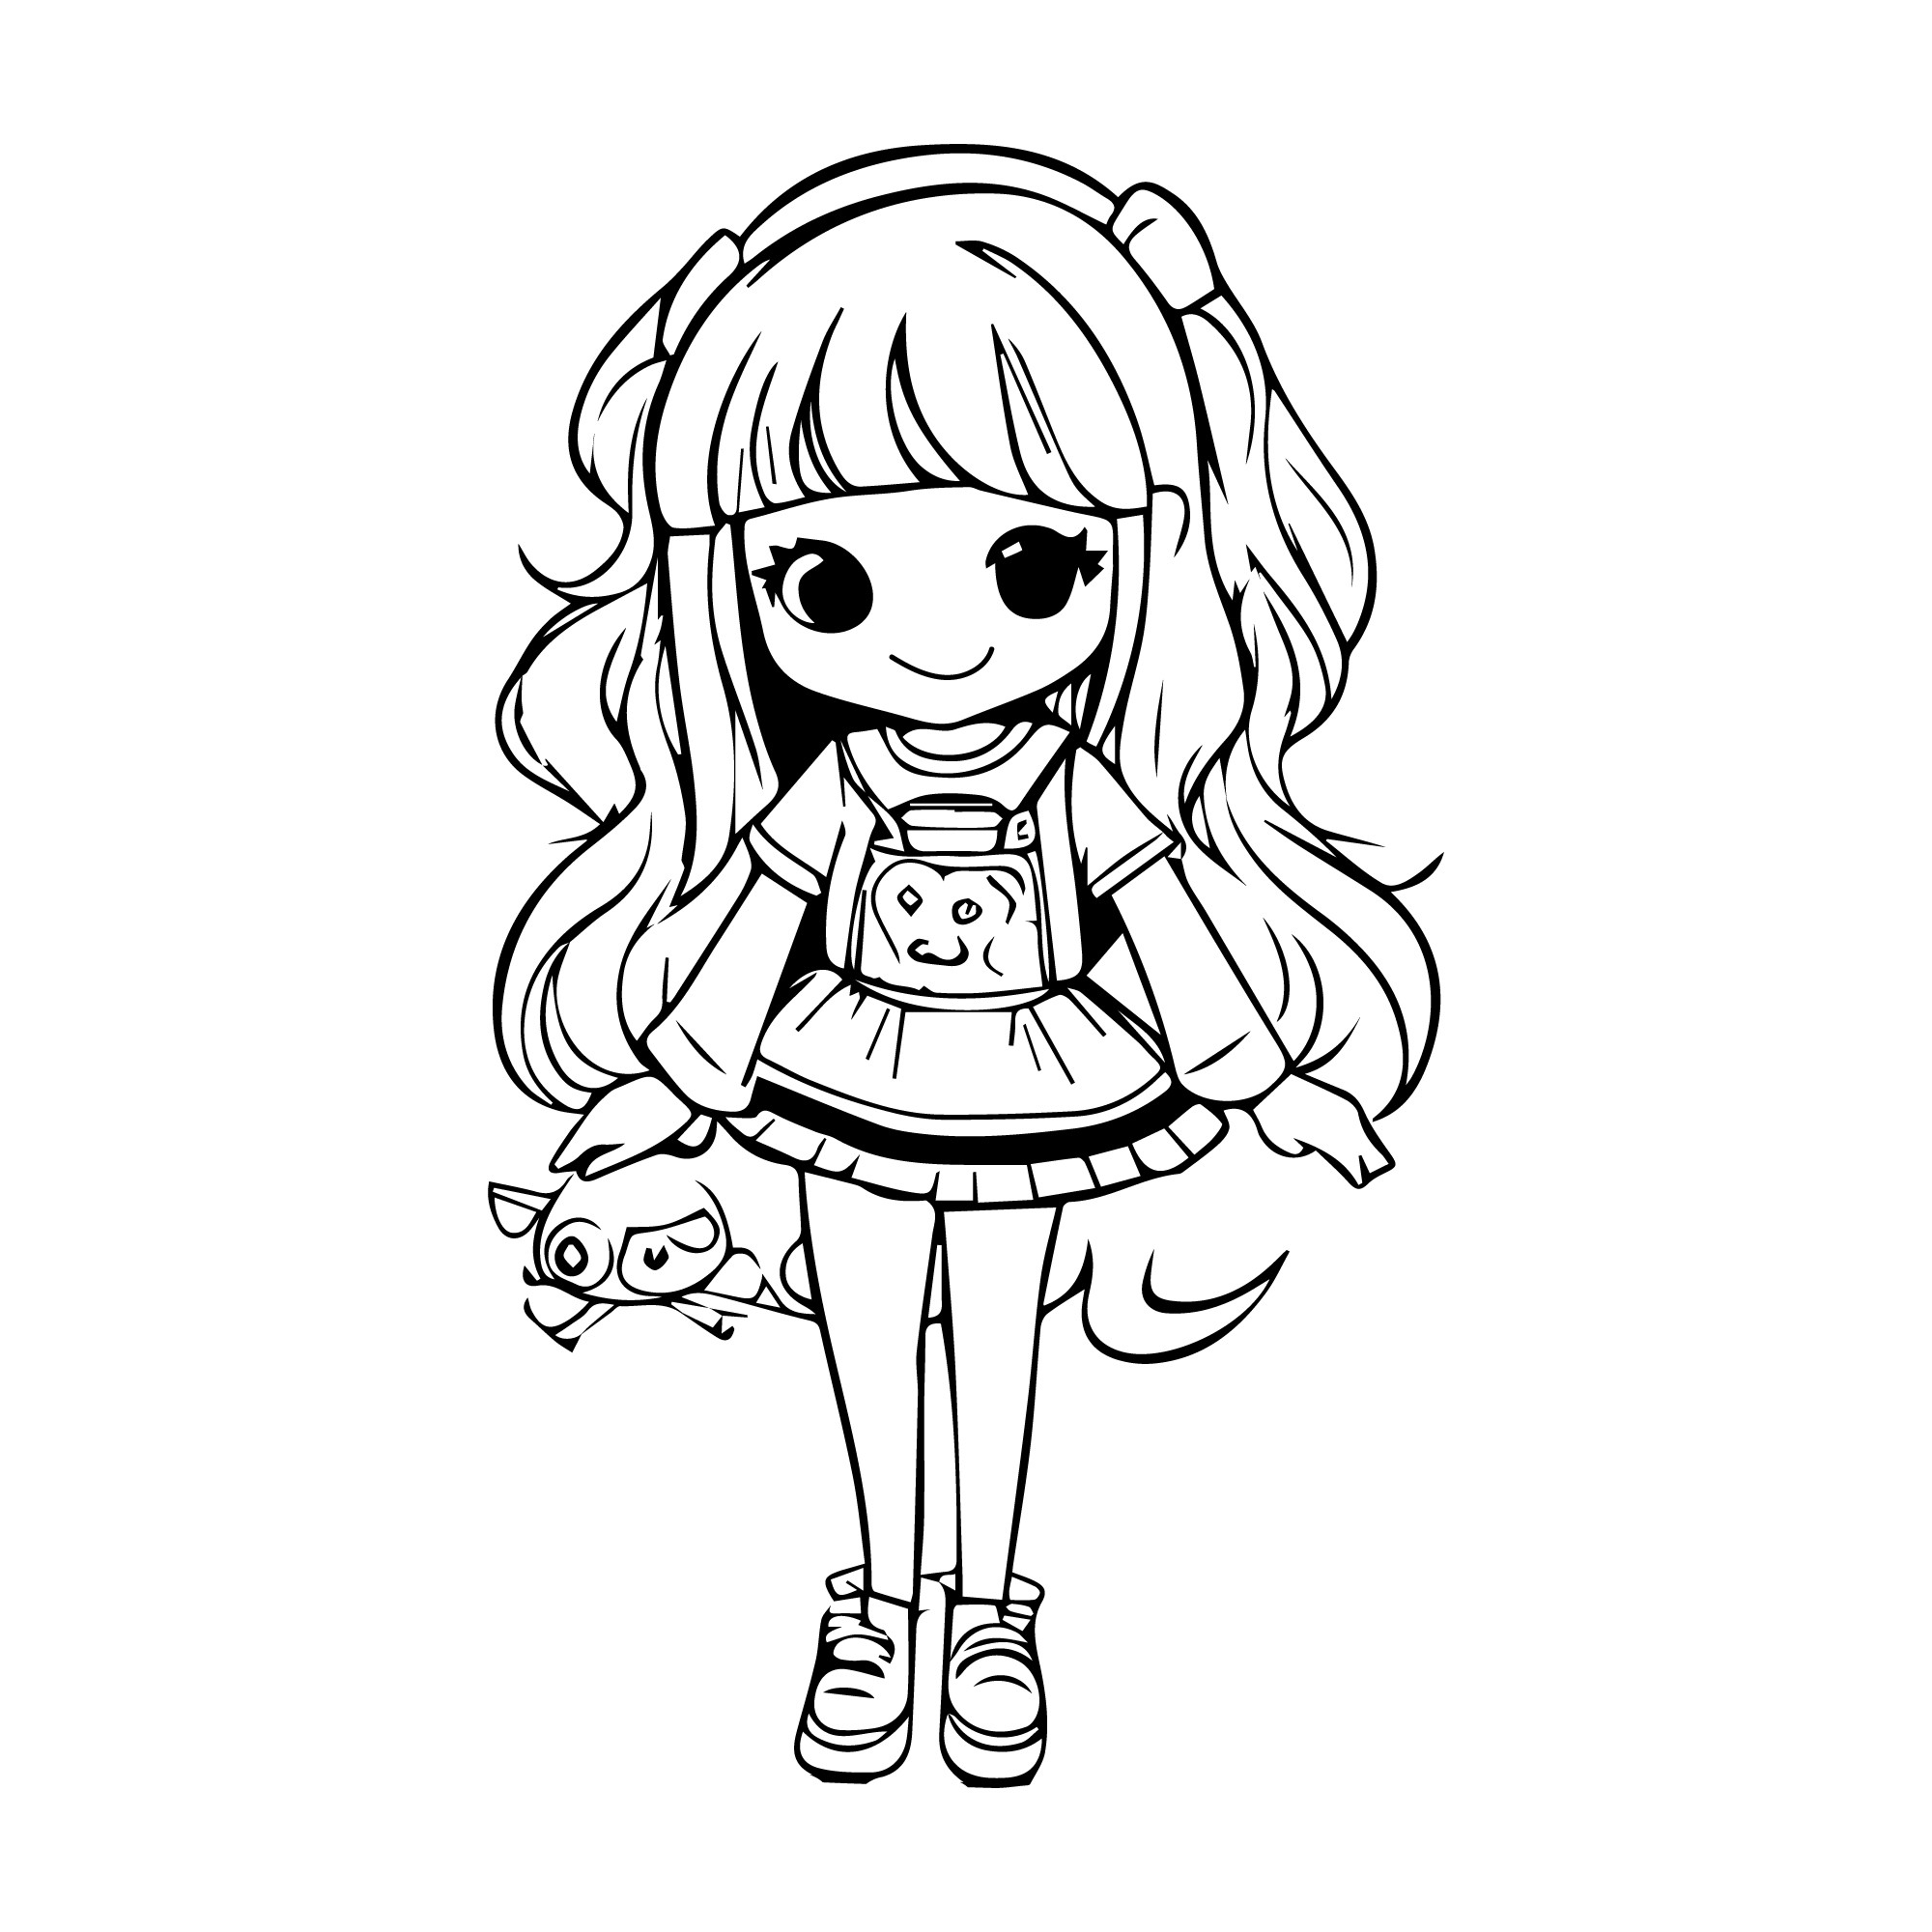 Раскраска для детей: кукла аниме девочка с длинными волосами